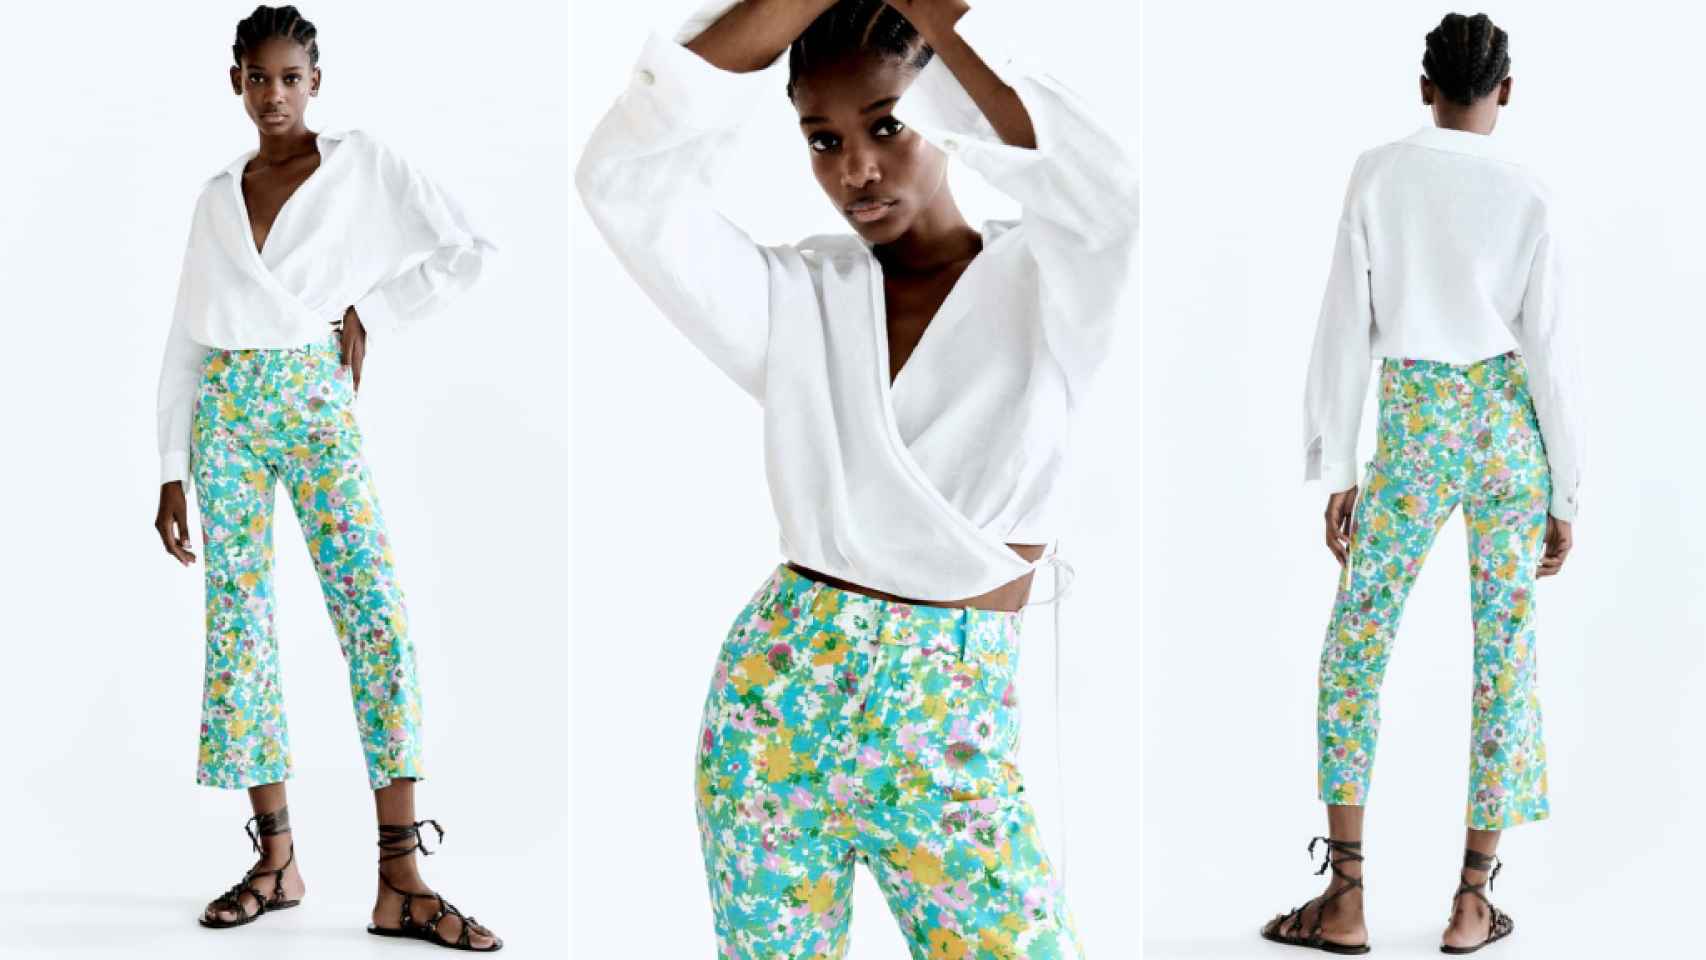 El pantalón más colorido y 'trendy' de Zara que resolverá tus